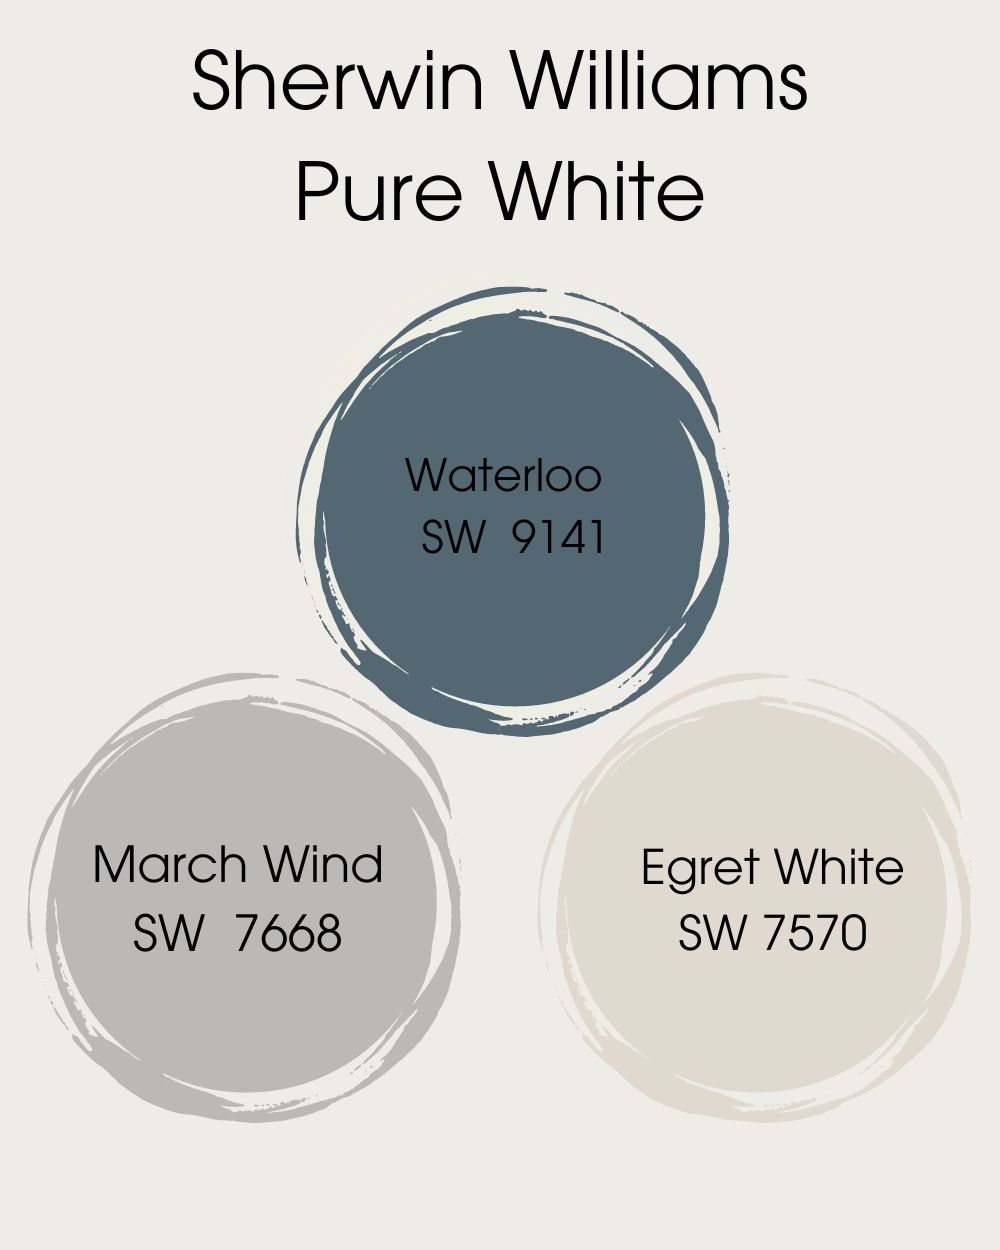 Pure White SW 7005